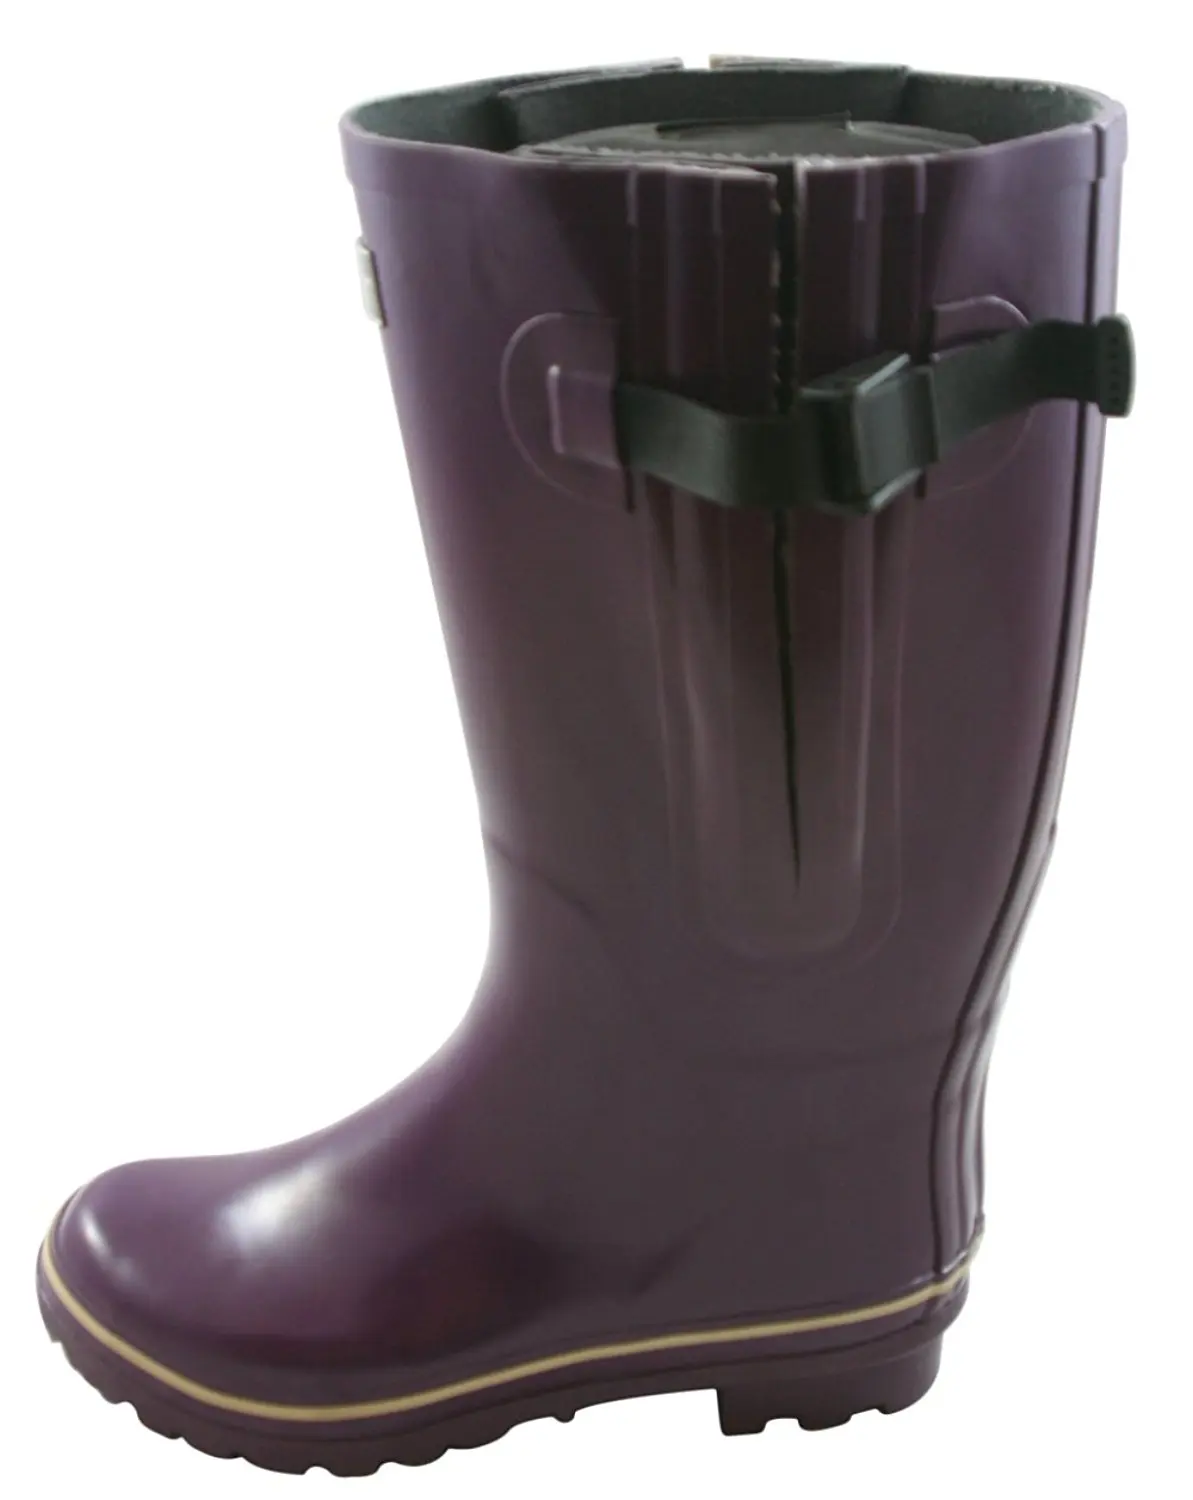 mens wide calf rain boots